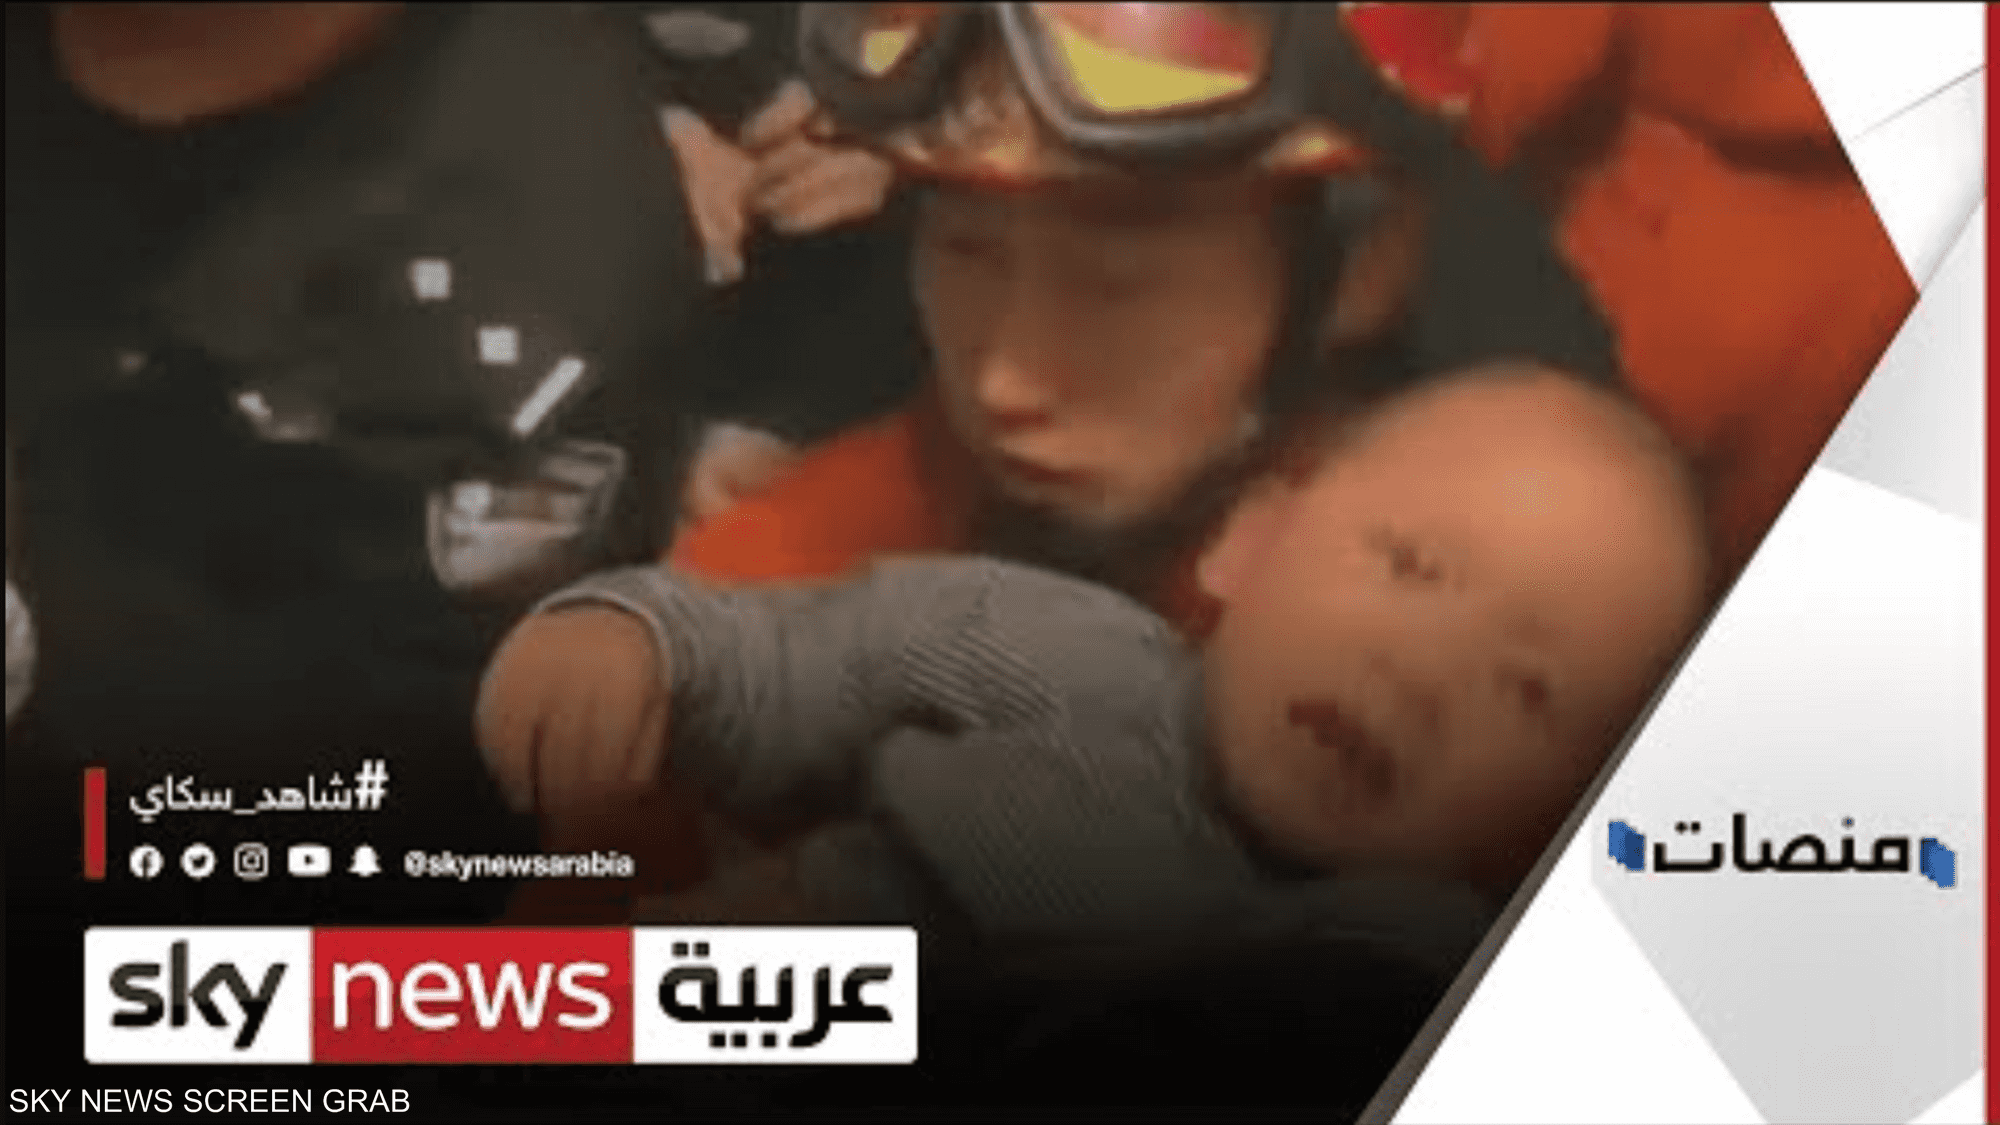 طفل صيني ينجو بأعجوبة بعد سقوطه من الطابق 13 في الصين